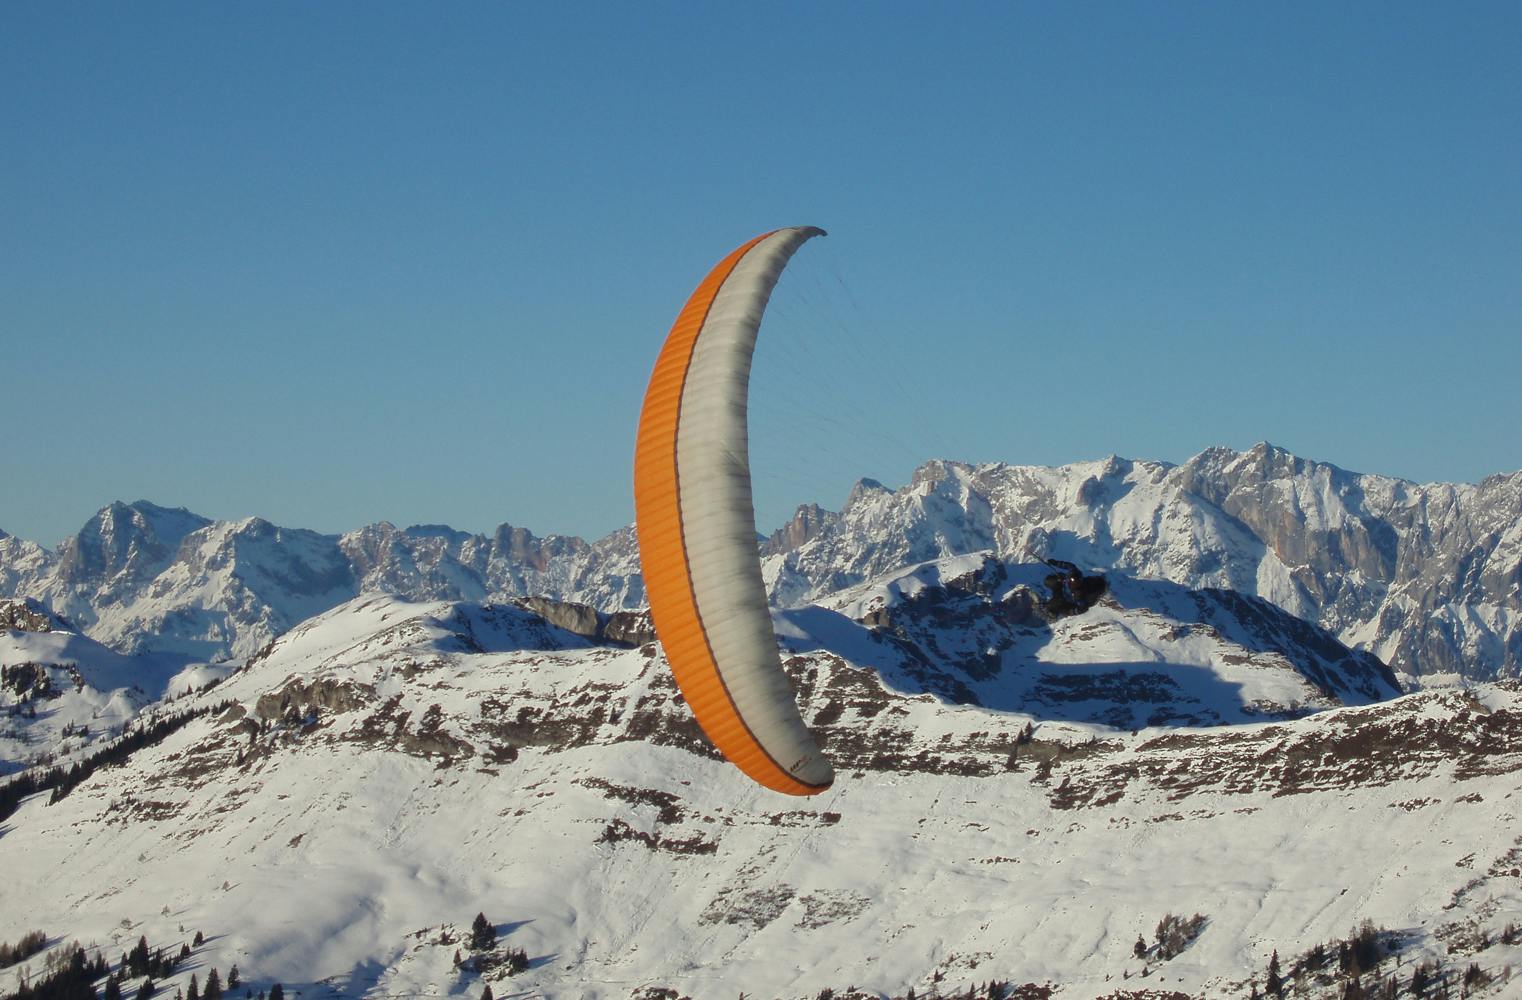 Gleitschirm-Höhenflug | bis zu 1400 hm inkl. Fotos & Video